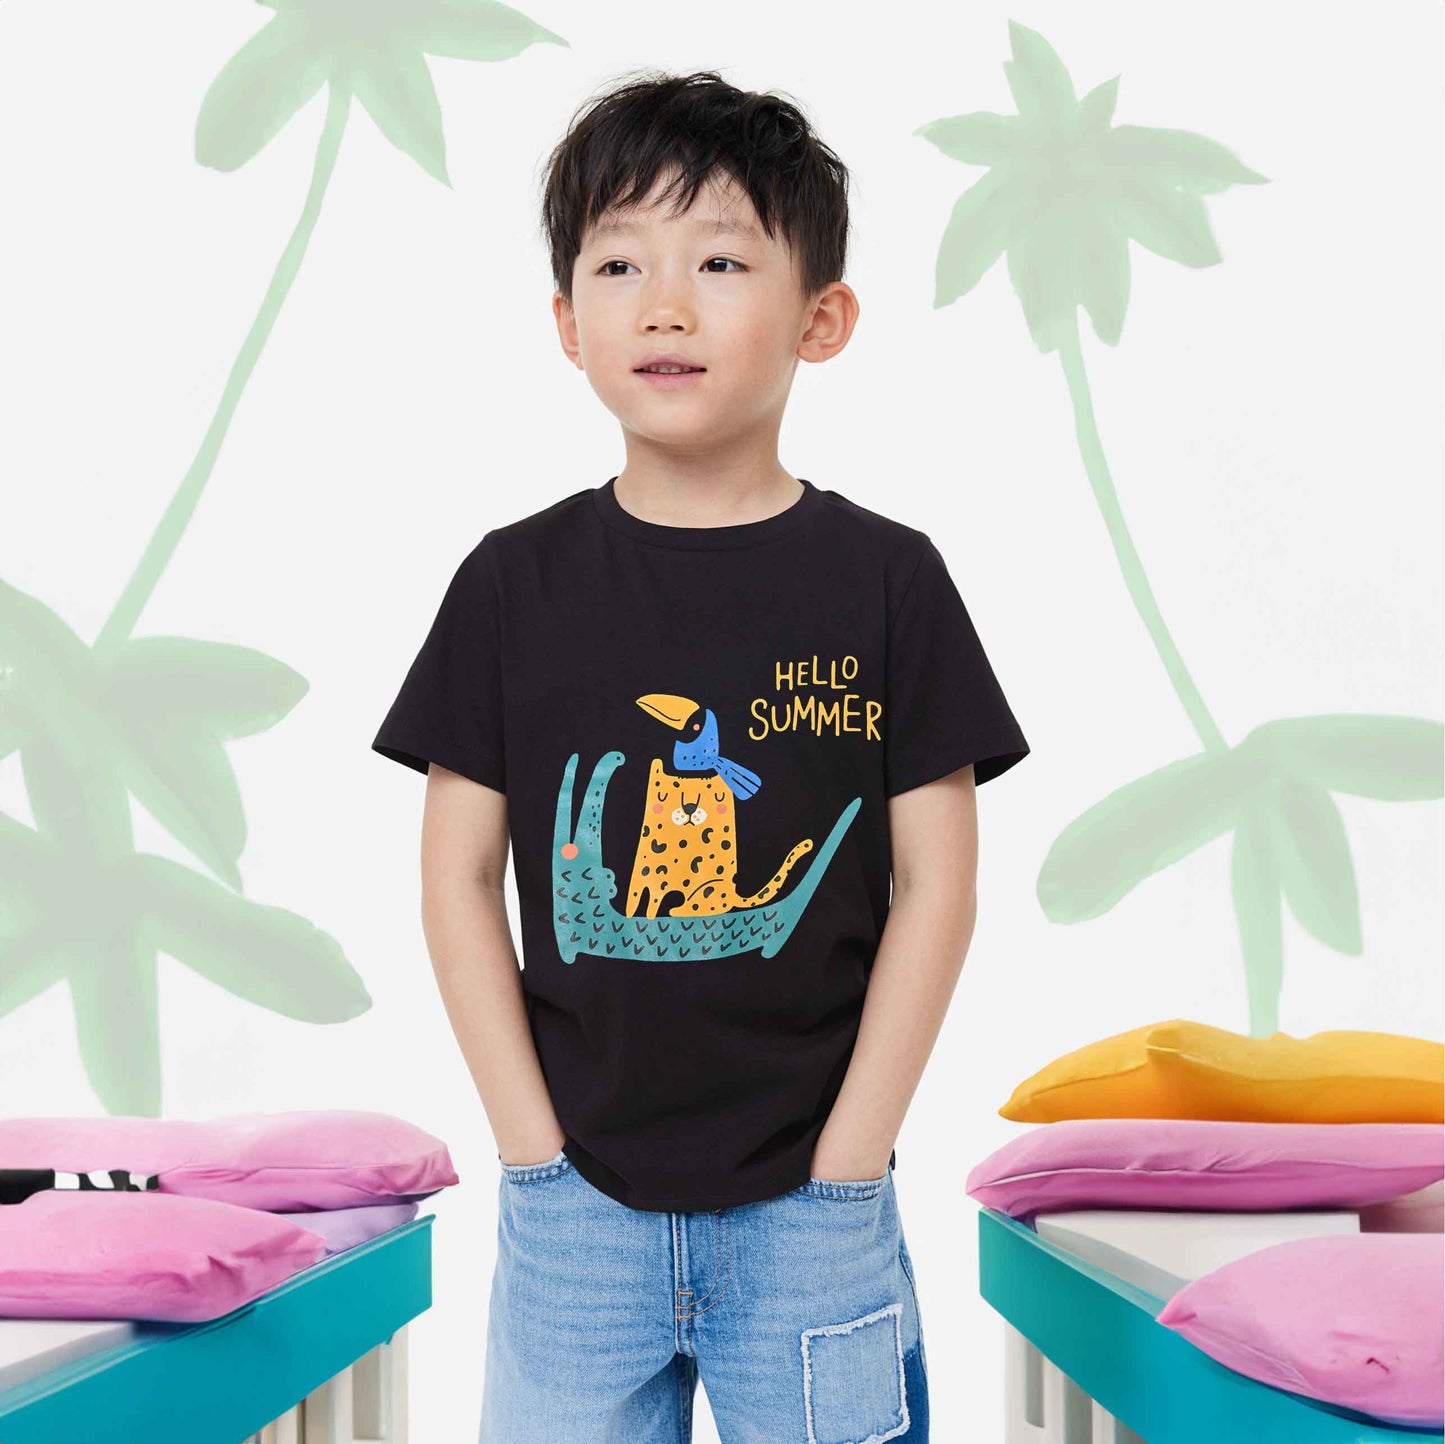 Polo Republica Boy's Hello Summer Printed Tee Shirt Boy's Tee Shirt Polo Republica Black 1-2 Years 